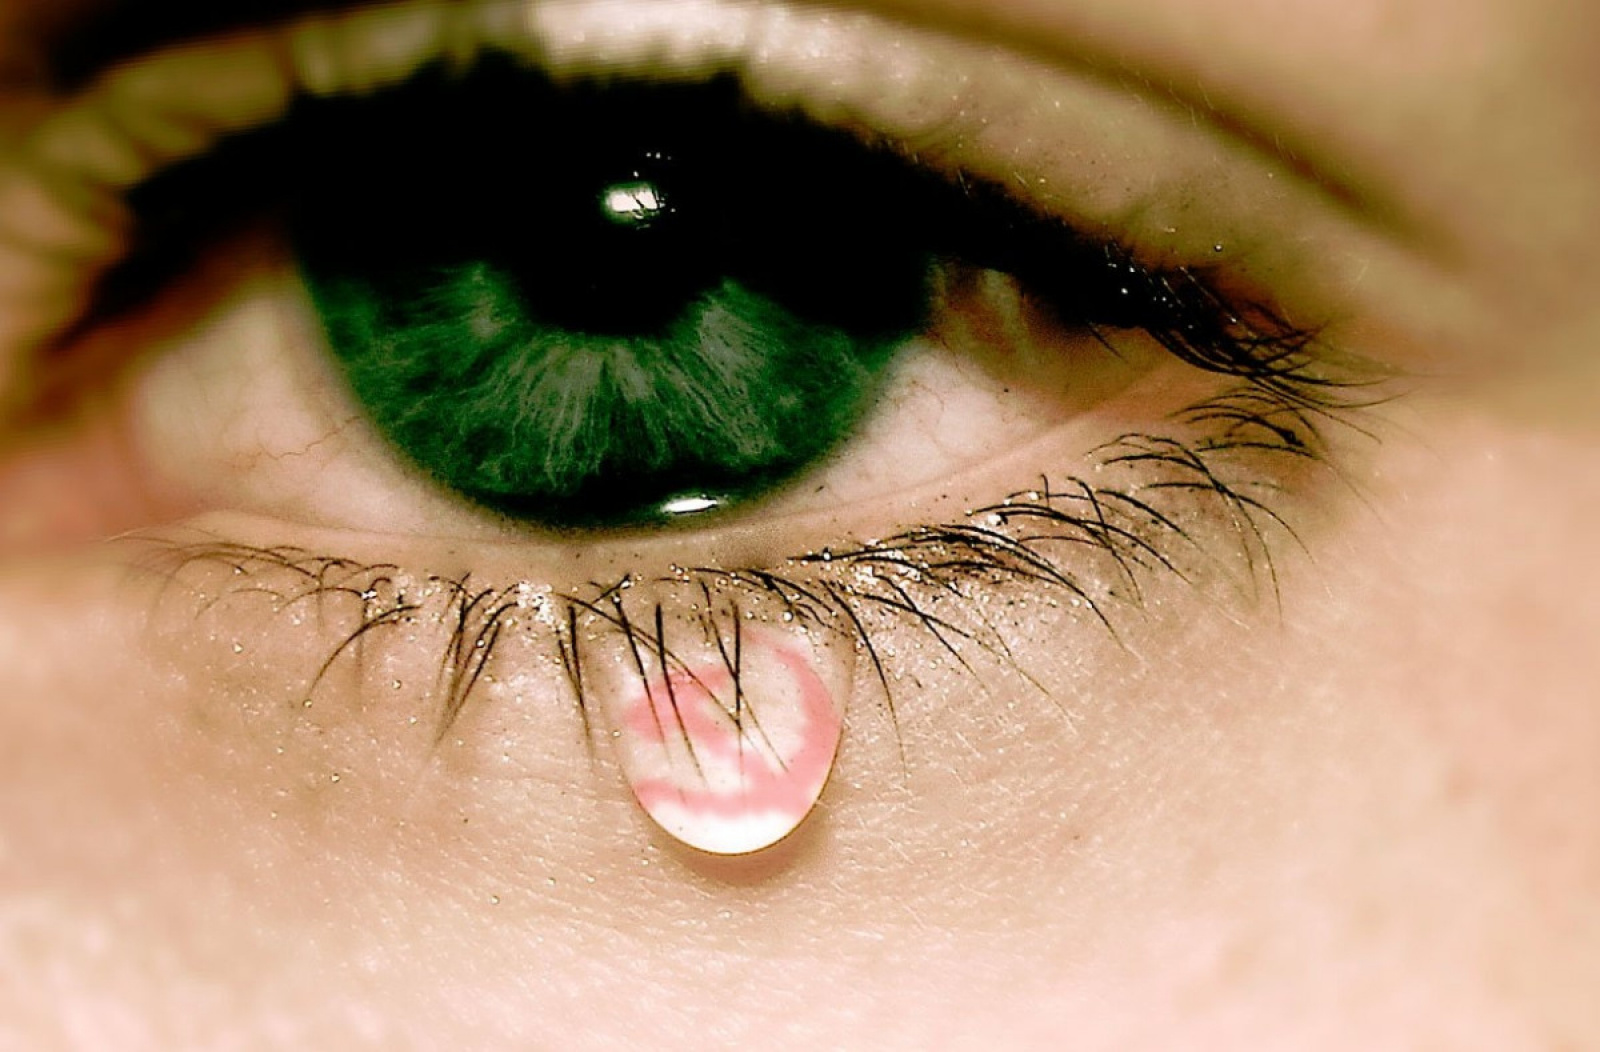 Глаза полные счастья. Слезы. Заплаканные зелёные глаза. Глаз со слезой. Плачущие глаза.